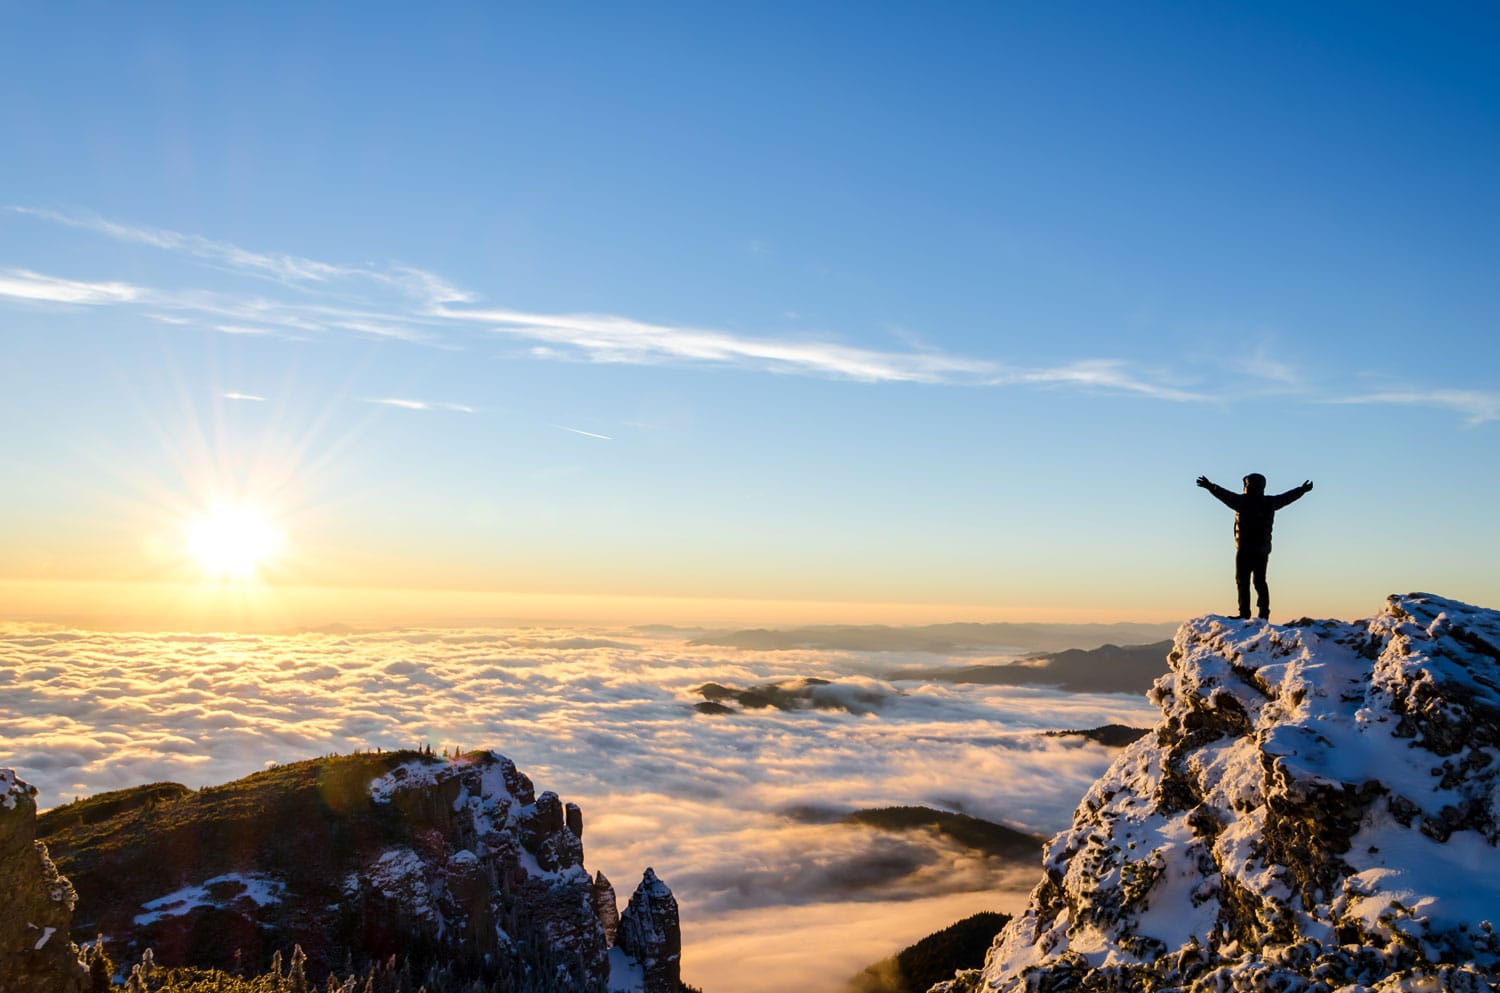 πεζοπόρος που γιορτάζει την επιτυχία στην κορυφή ενός βουνού σε μια μαγευτική ανατολή